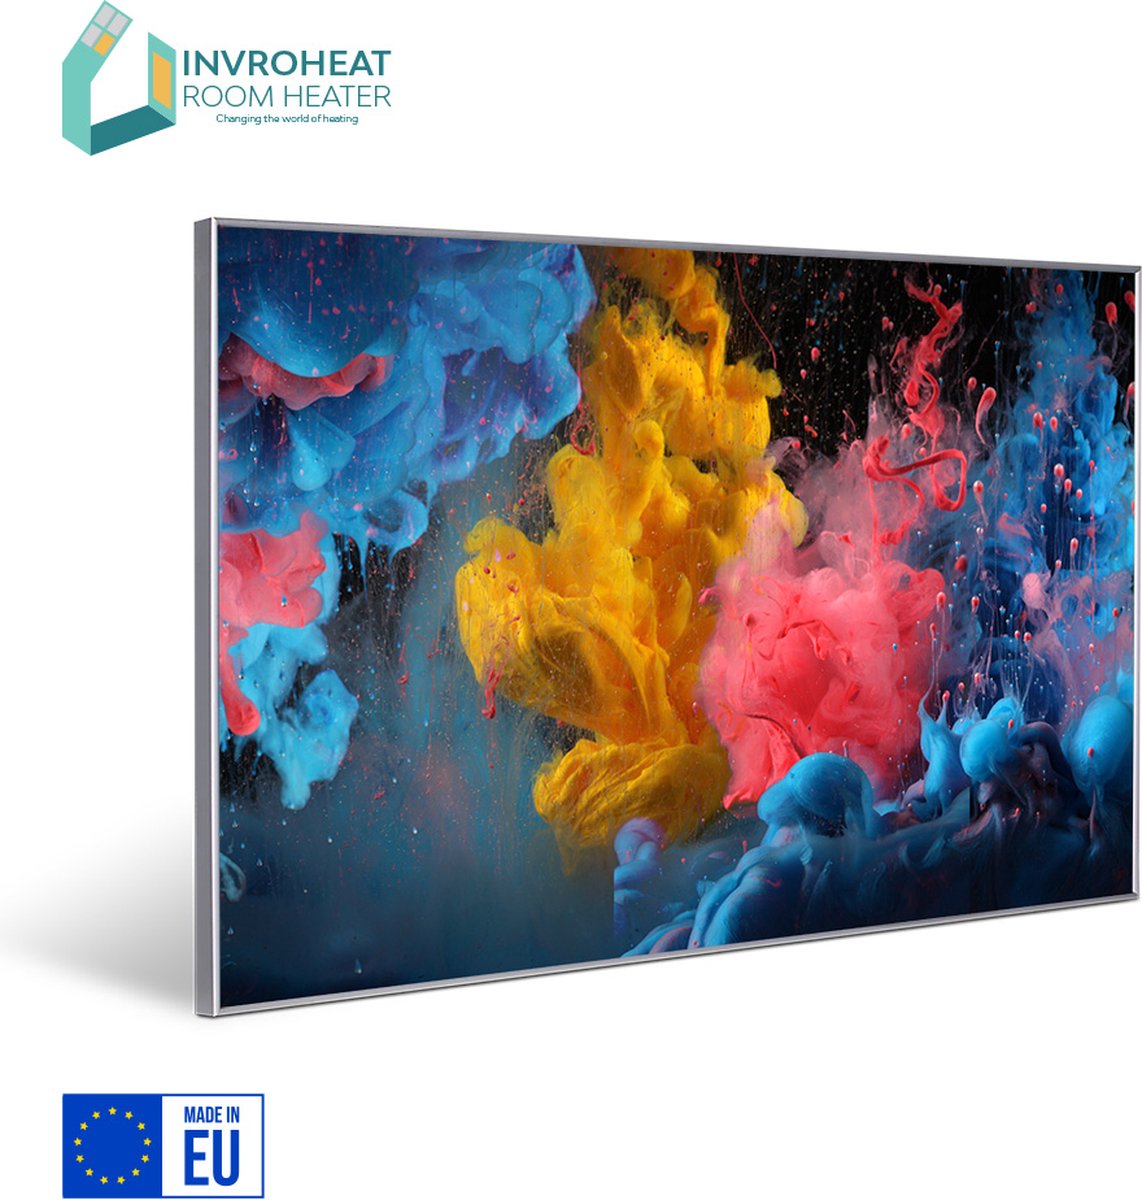 NIEUW: Invroheat infrarood verwarmingspaneel Vivid Paint - 800W - 91.5x61cm - Afbeelding verwisselbaar